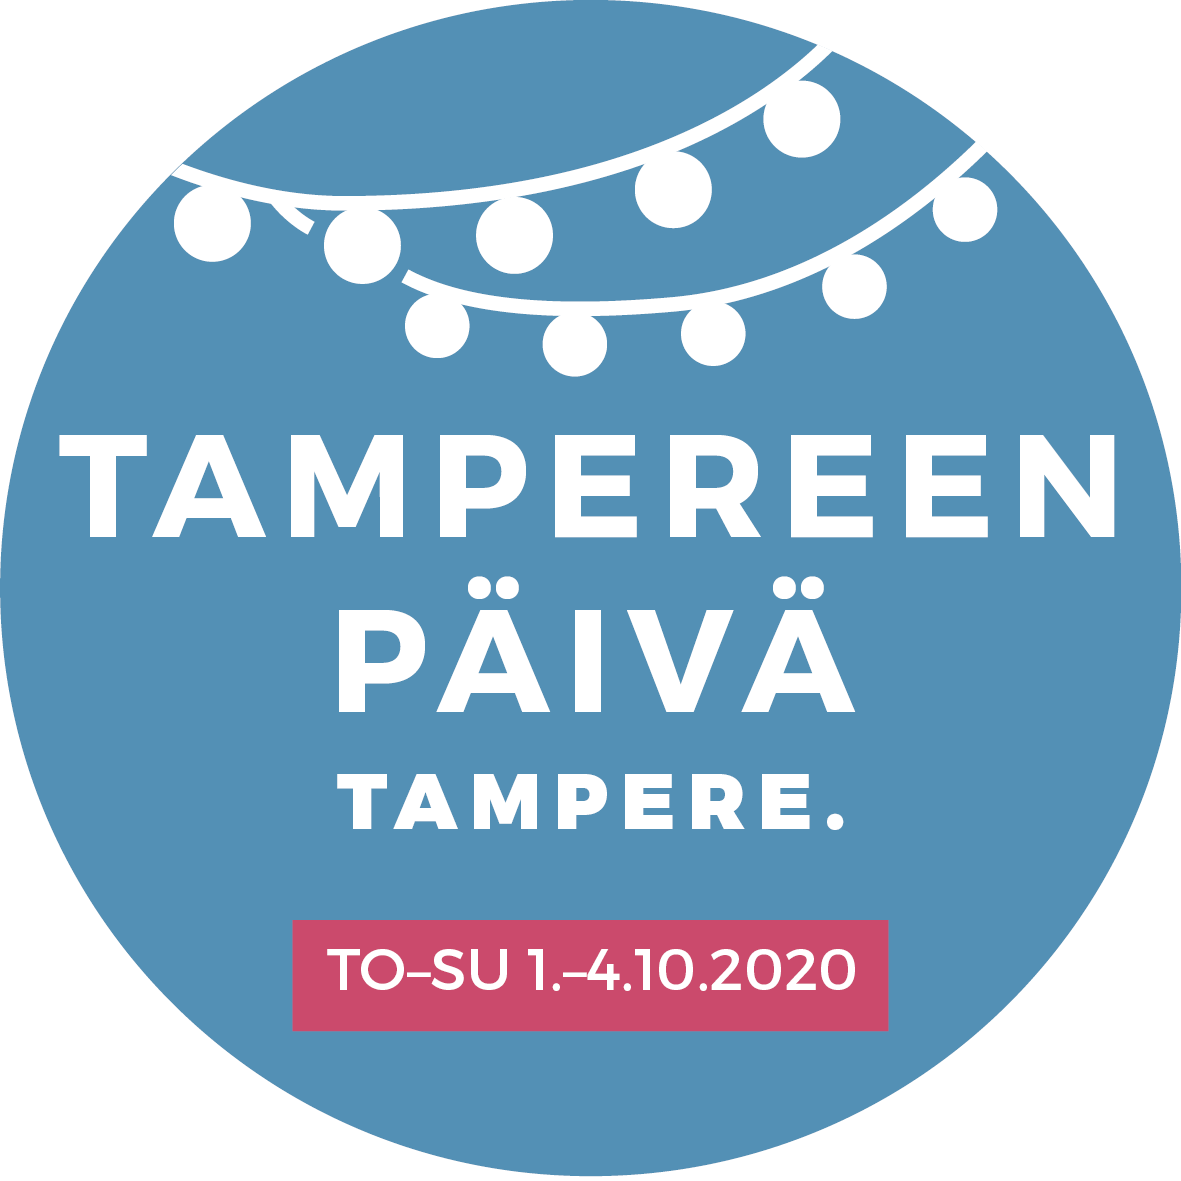 Tampereen päivä tampereen kaupunki